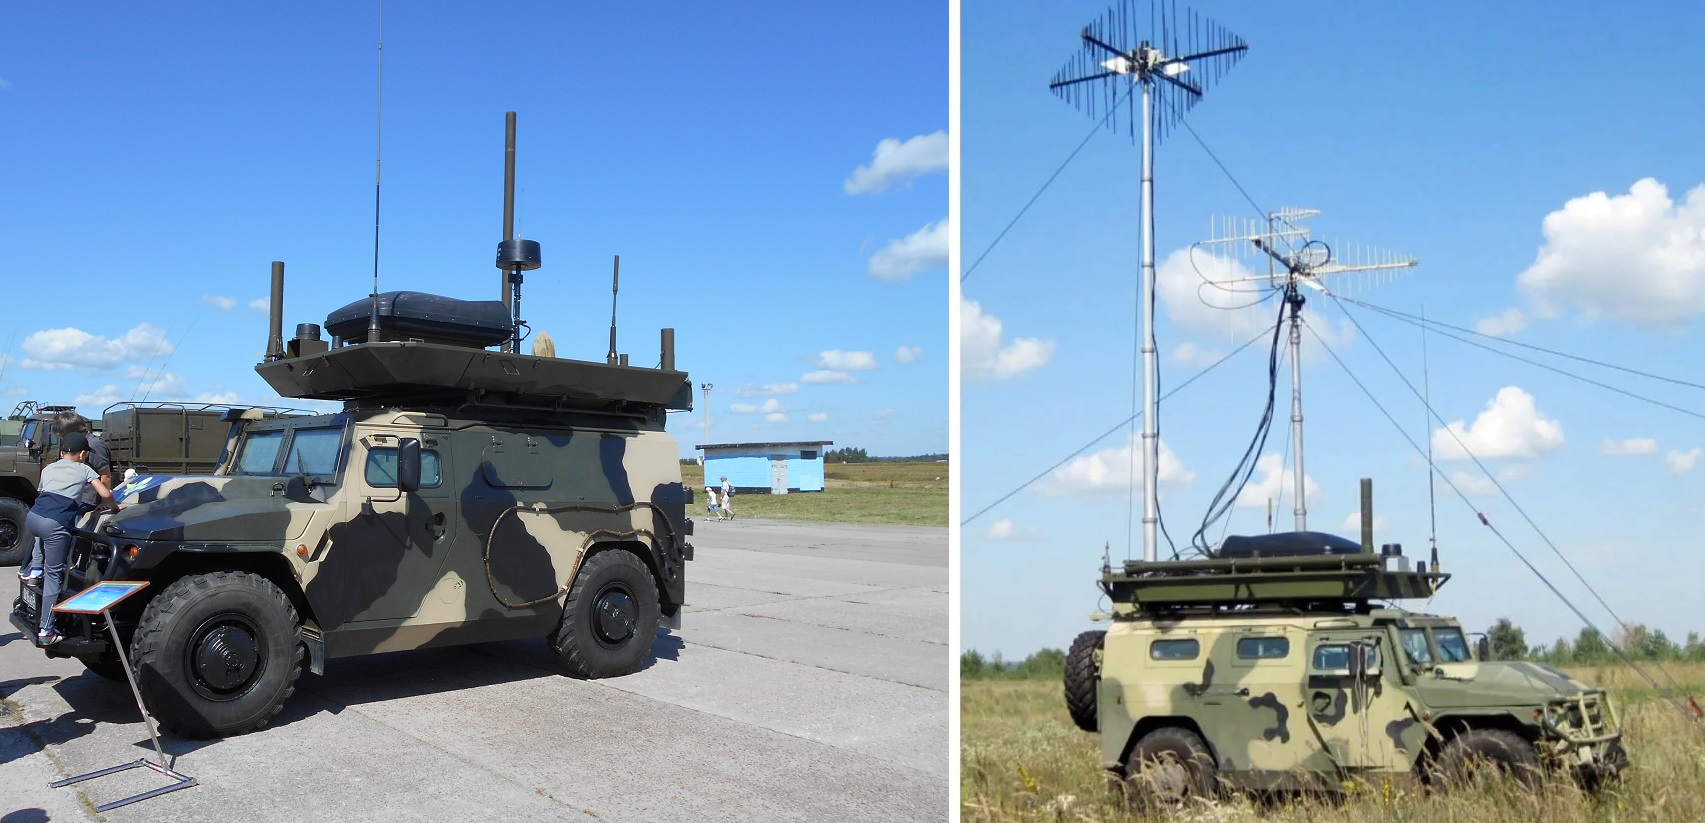 Die ukrainischen Streitkräfte zerstören erstmals die russische elektronische Kampfstation Leer-2 auf der Basis des gepanzerten Fahrzeugs Tiger-M